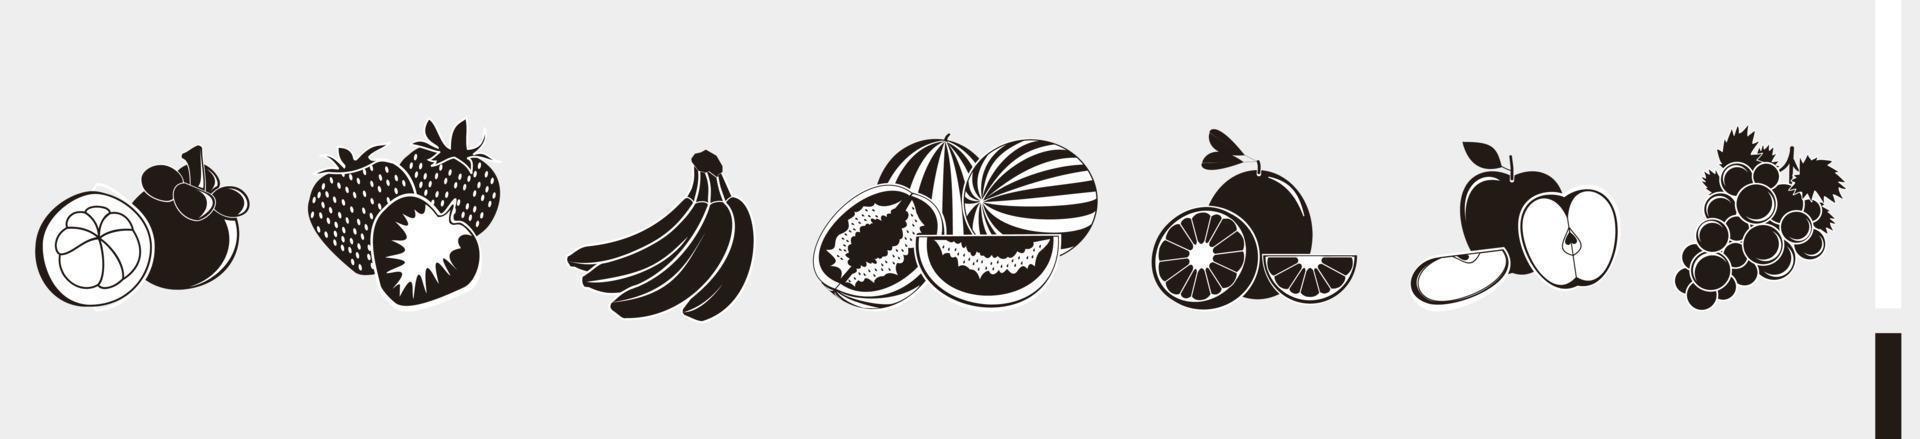 ilustraciones de cuajado de frutas para dibujar - silueta del logotipo del símbolo de la fruta vector